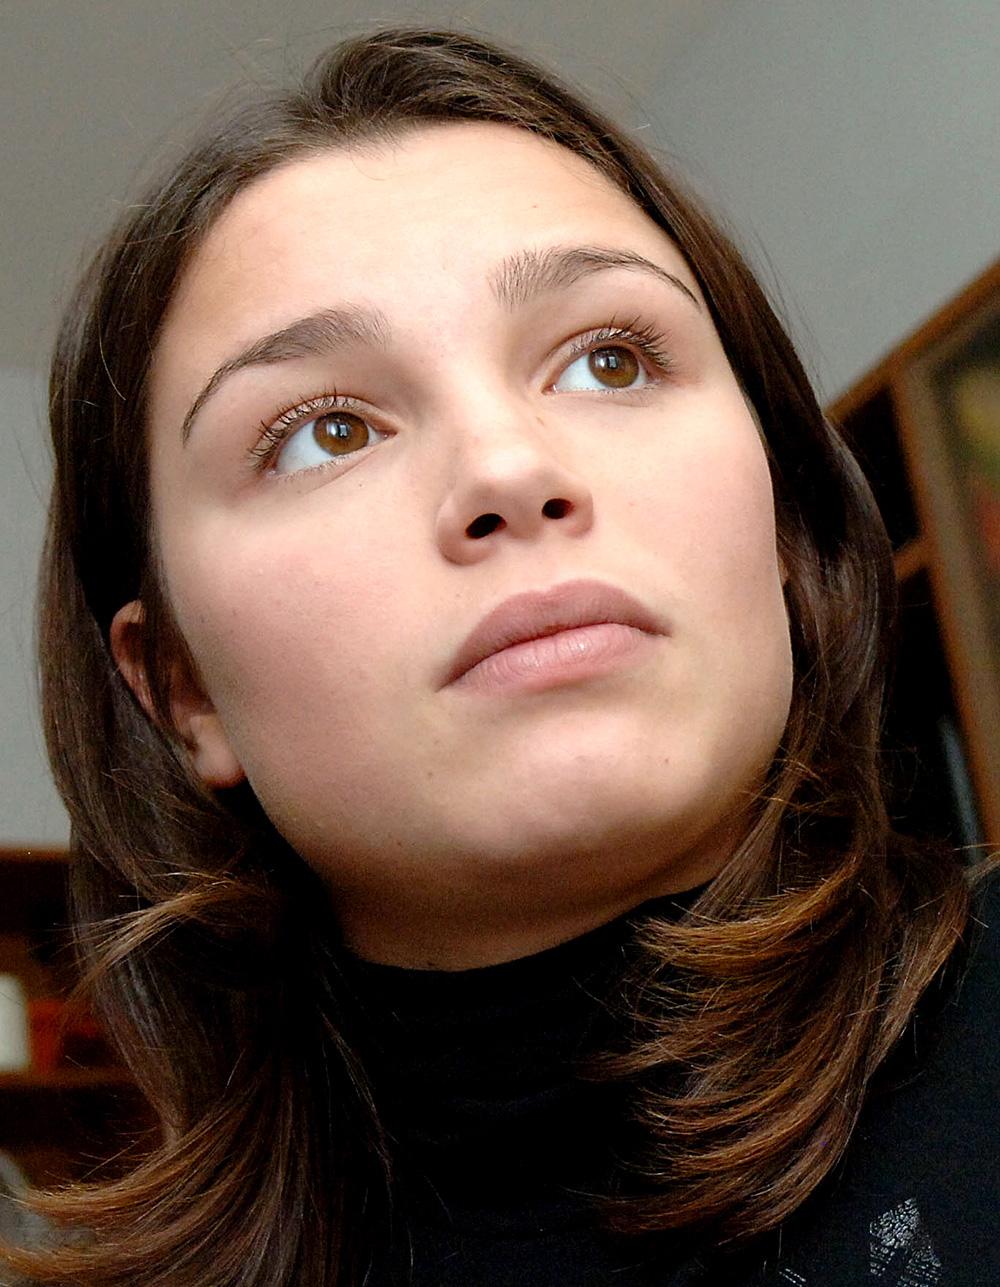 Zhanna Nemtsova är övertygad om att Putin ligger bakom mordet på hennes far.